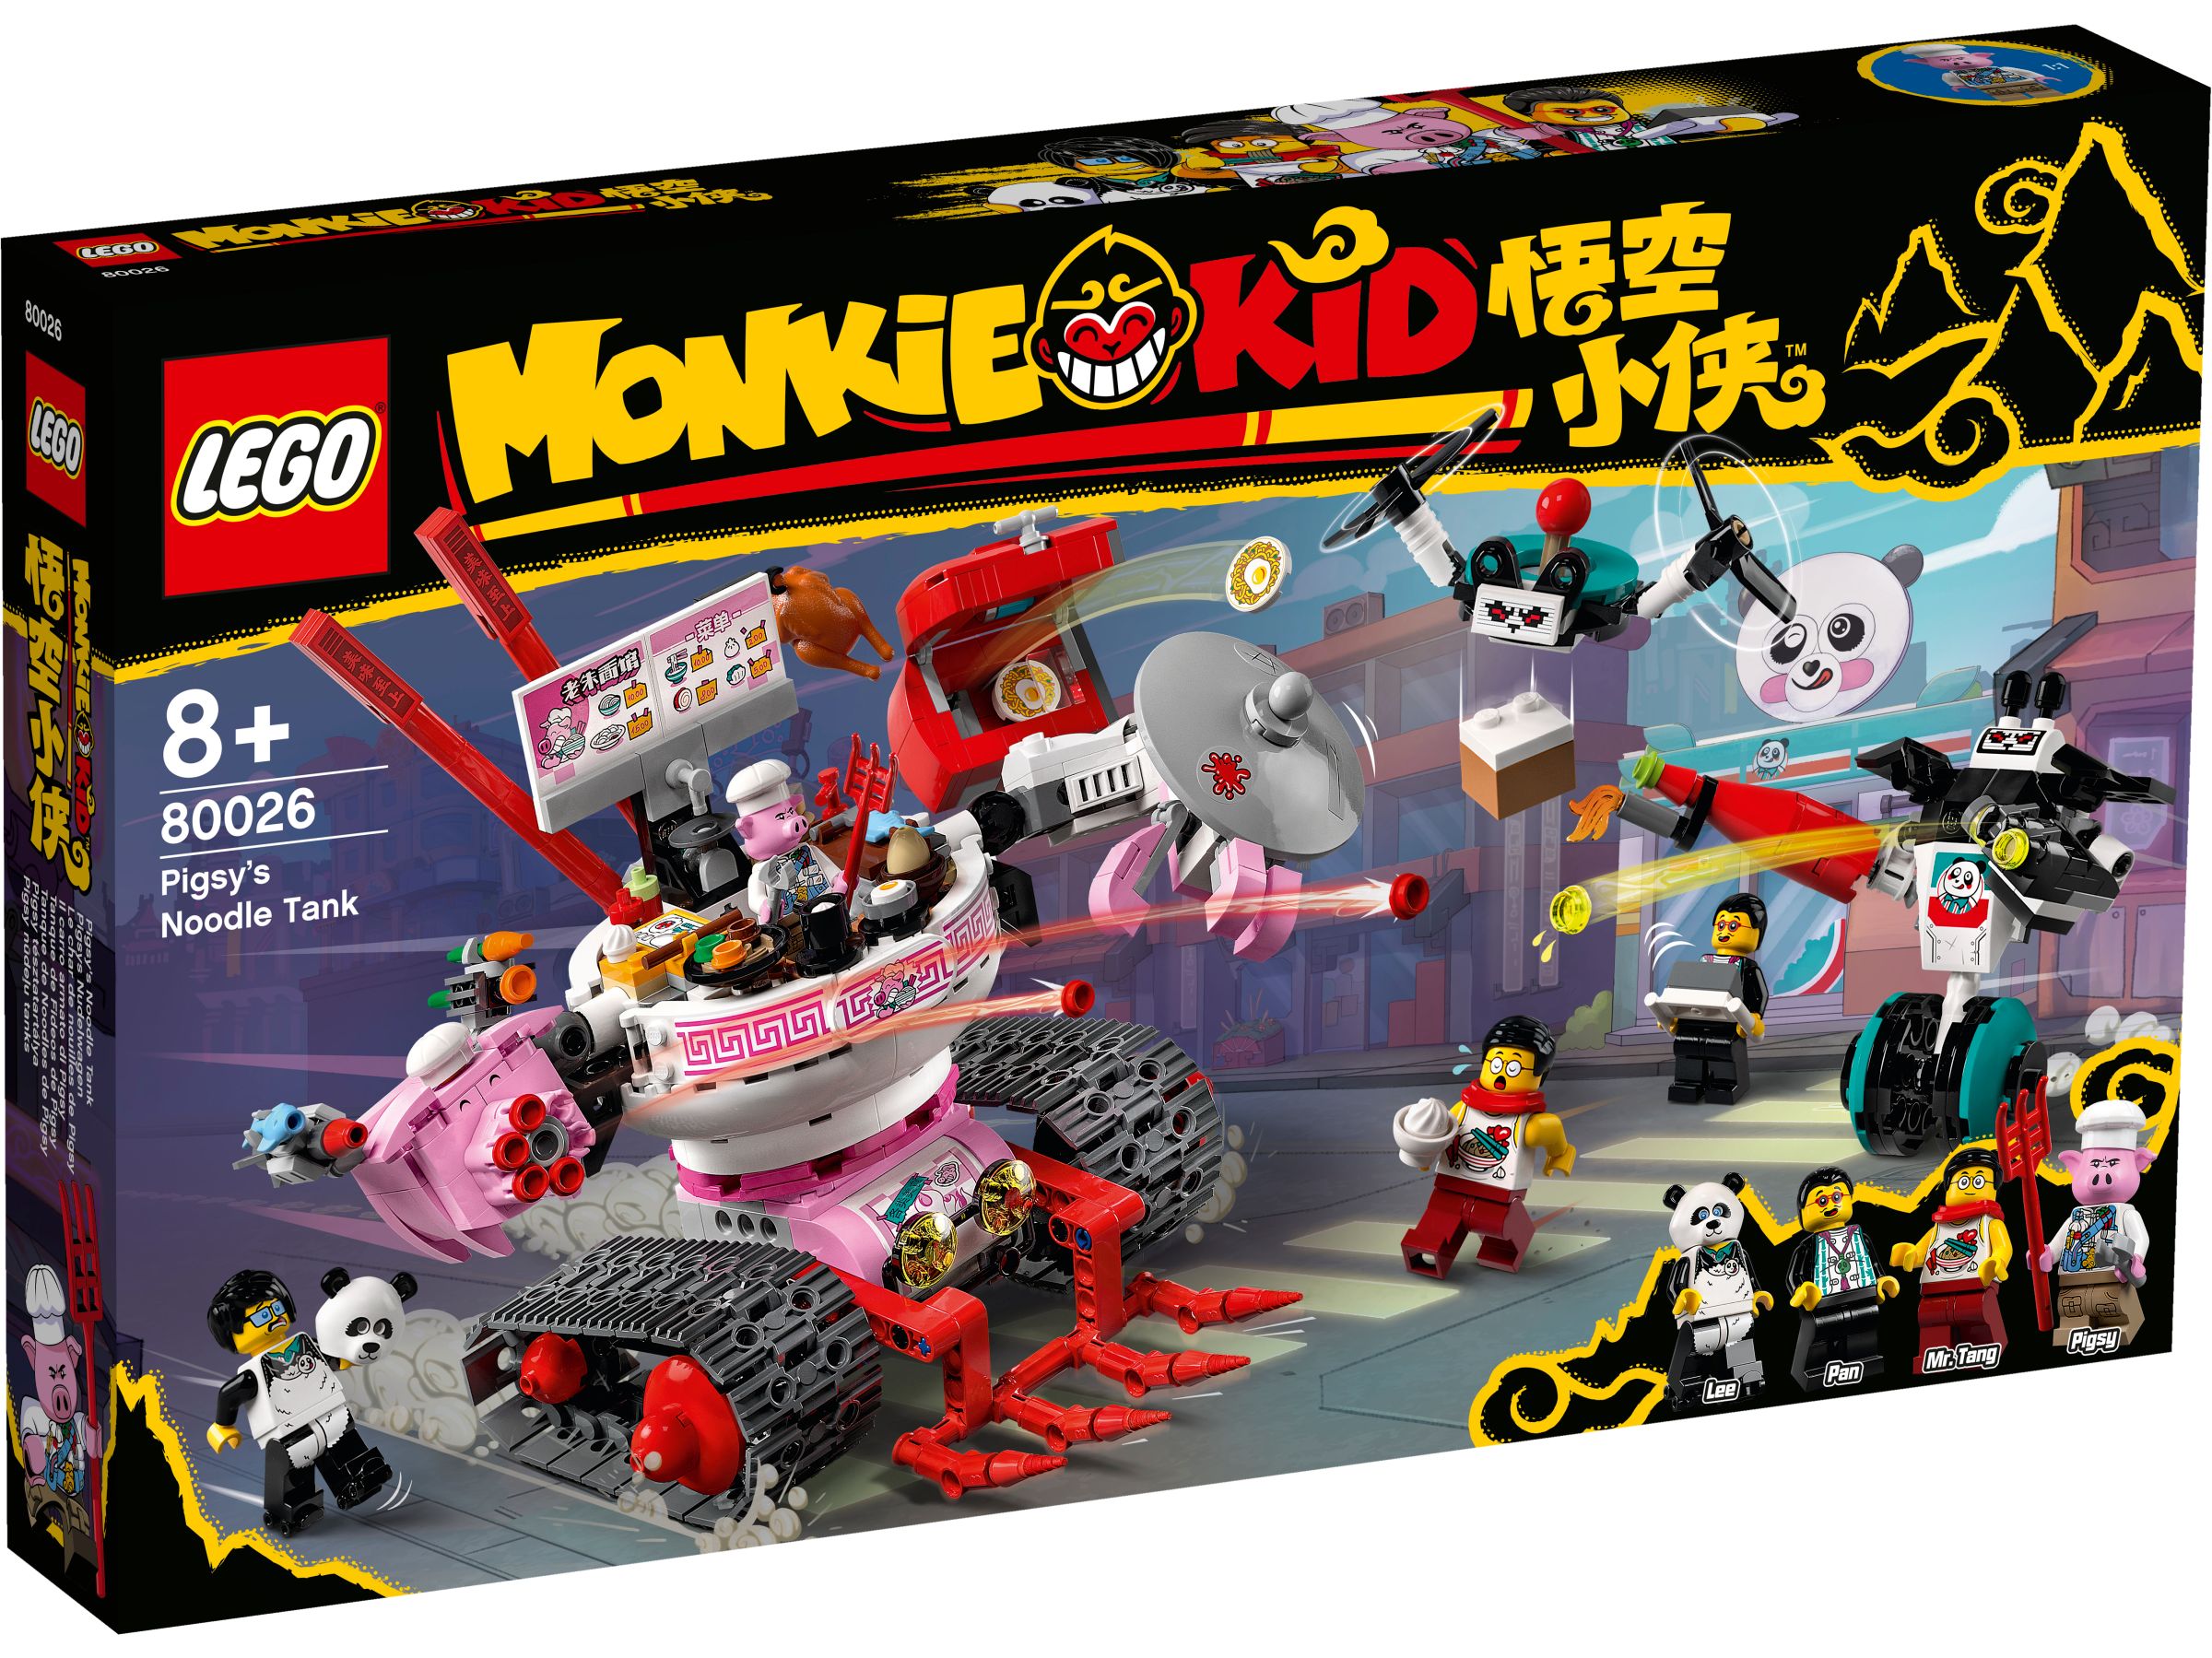 LEGO Monkie Kid 80026 Pigsys Nudelwagen LEGO_80026_box1_v29.jpg